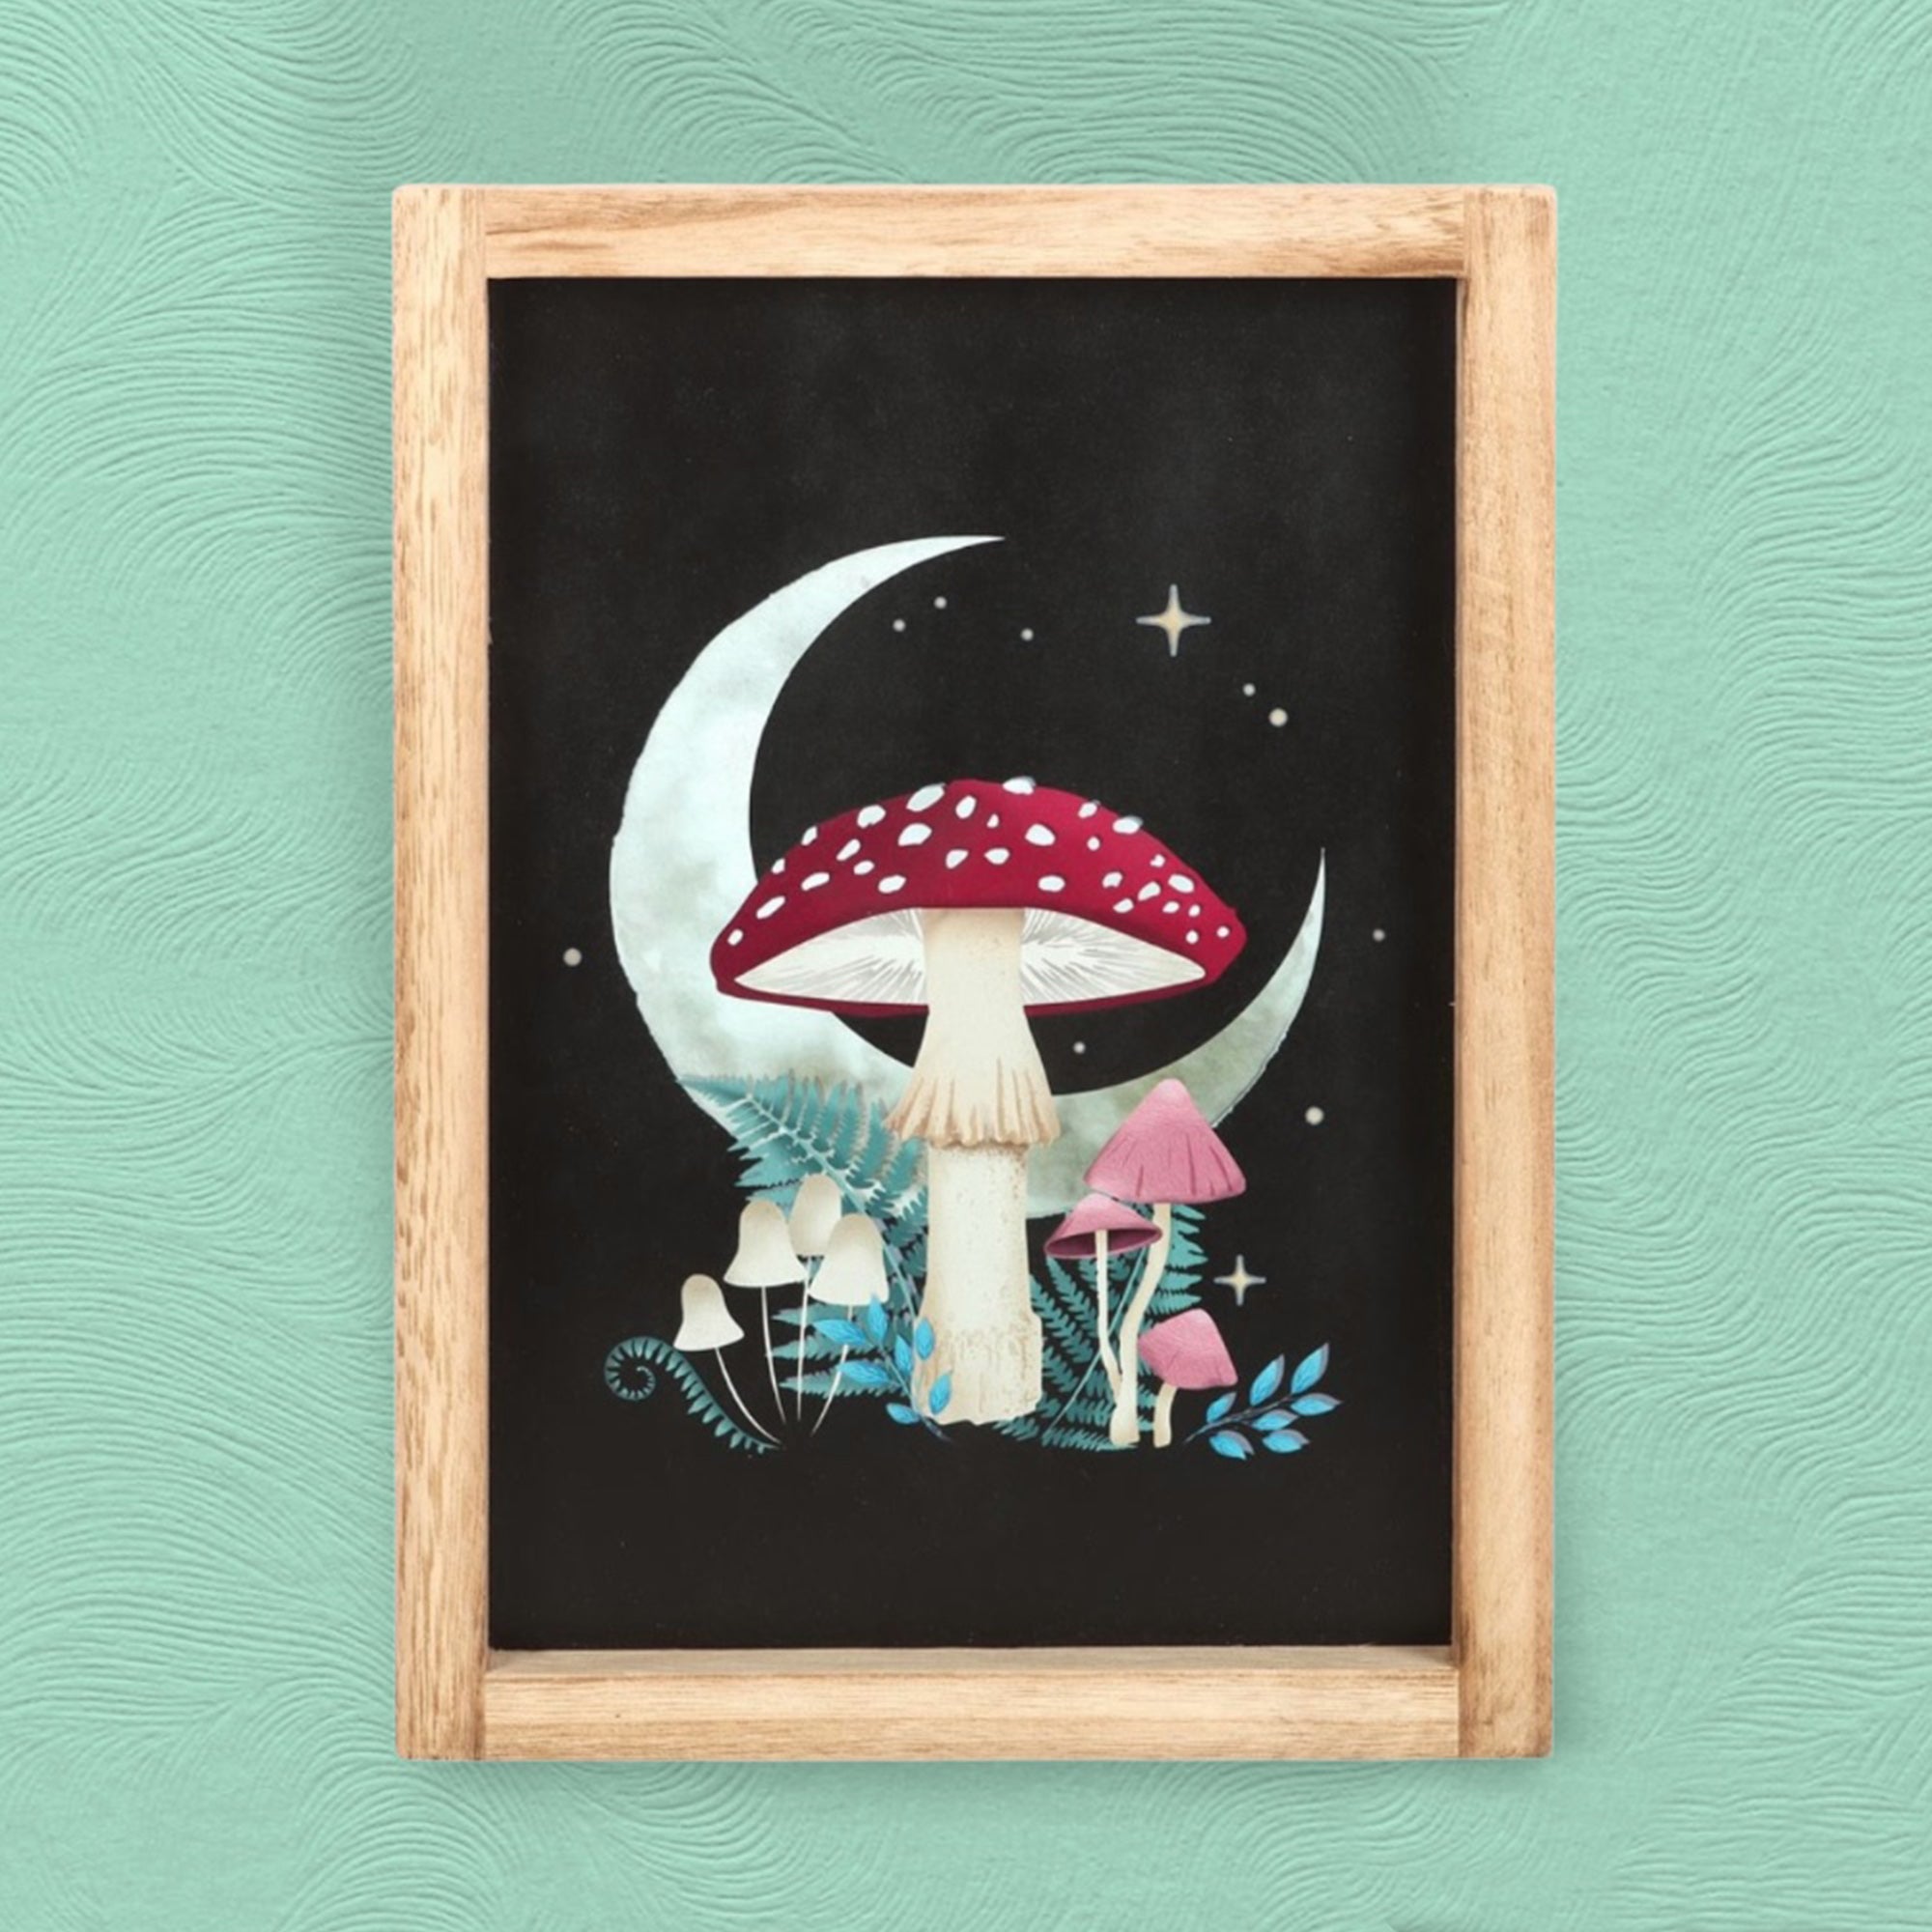 Fairytale Toadstool Framed Print - Woodland Mushroom Wall Art - Hanging Mushroom Art